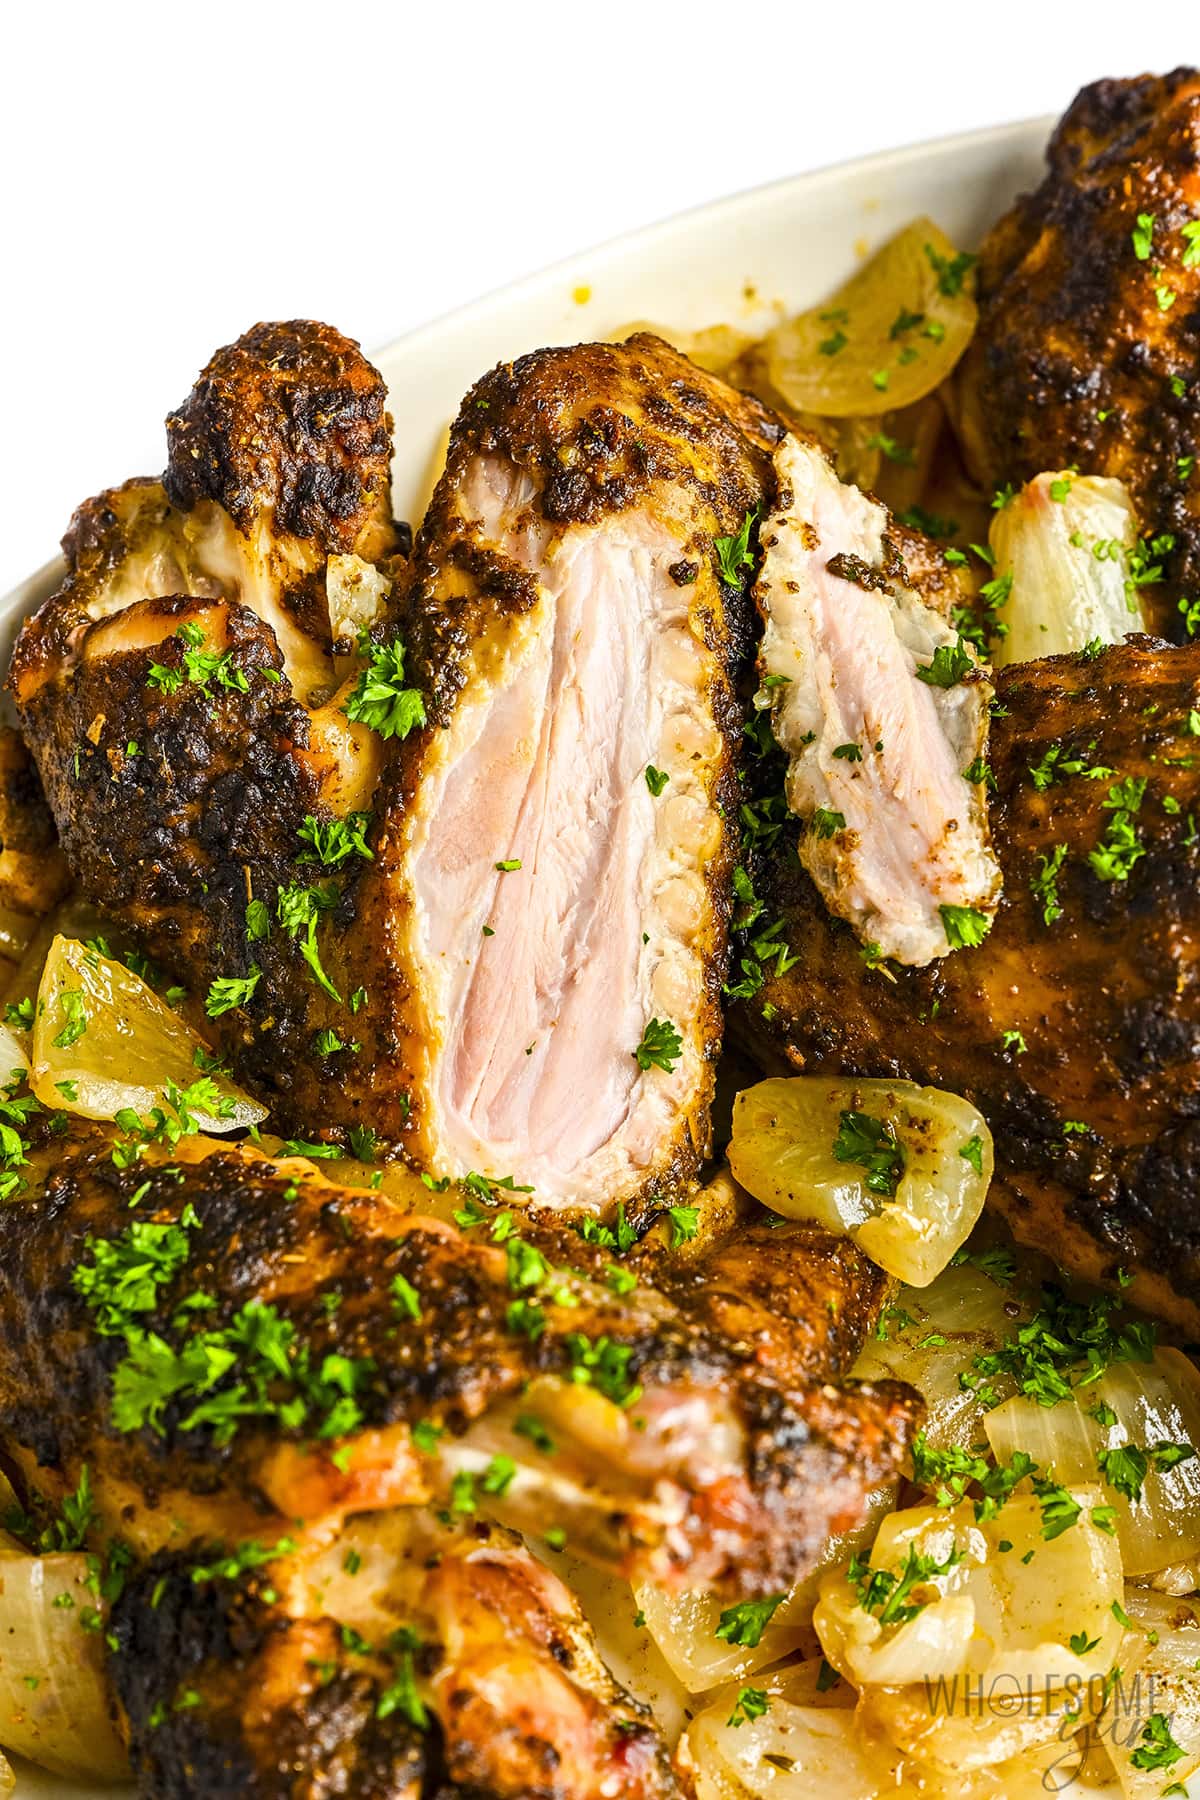 Turkey wings sliced open to show juicy meat.